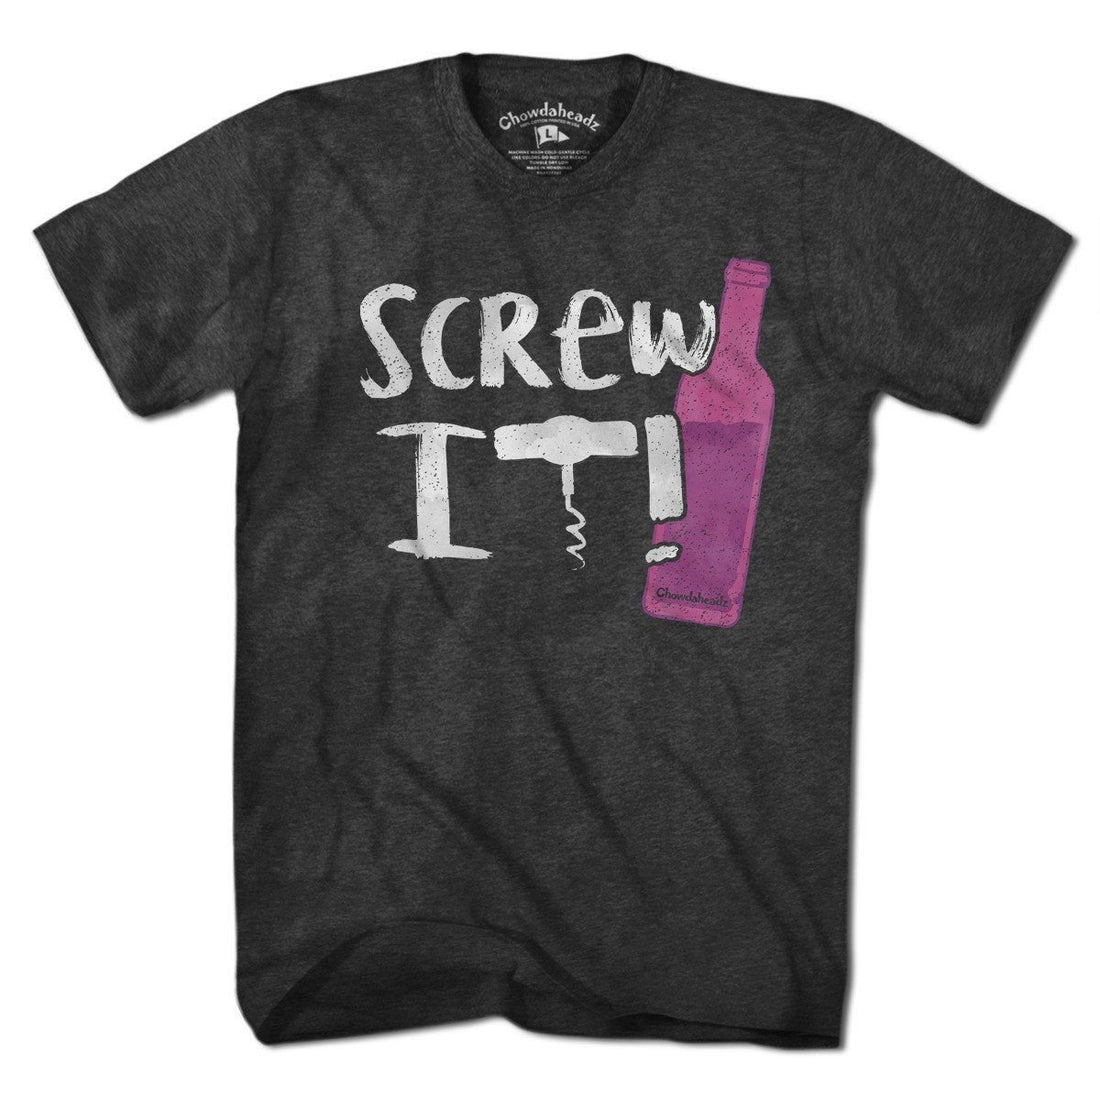 Screw It Wine Bottle T-Shirt - Chowdaheadz